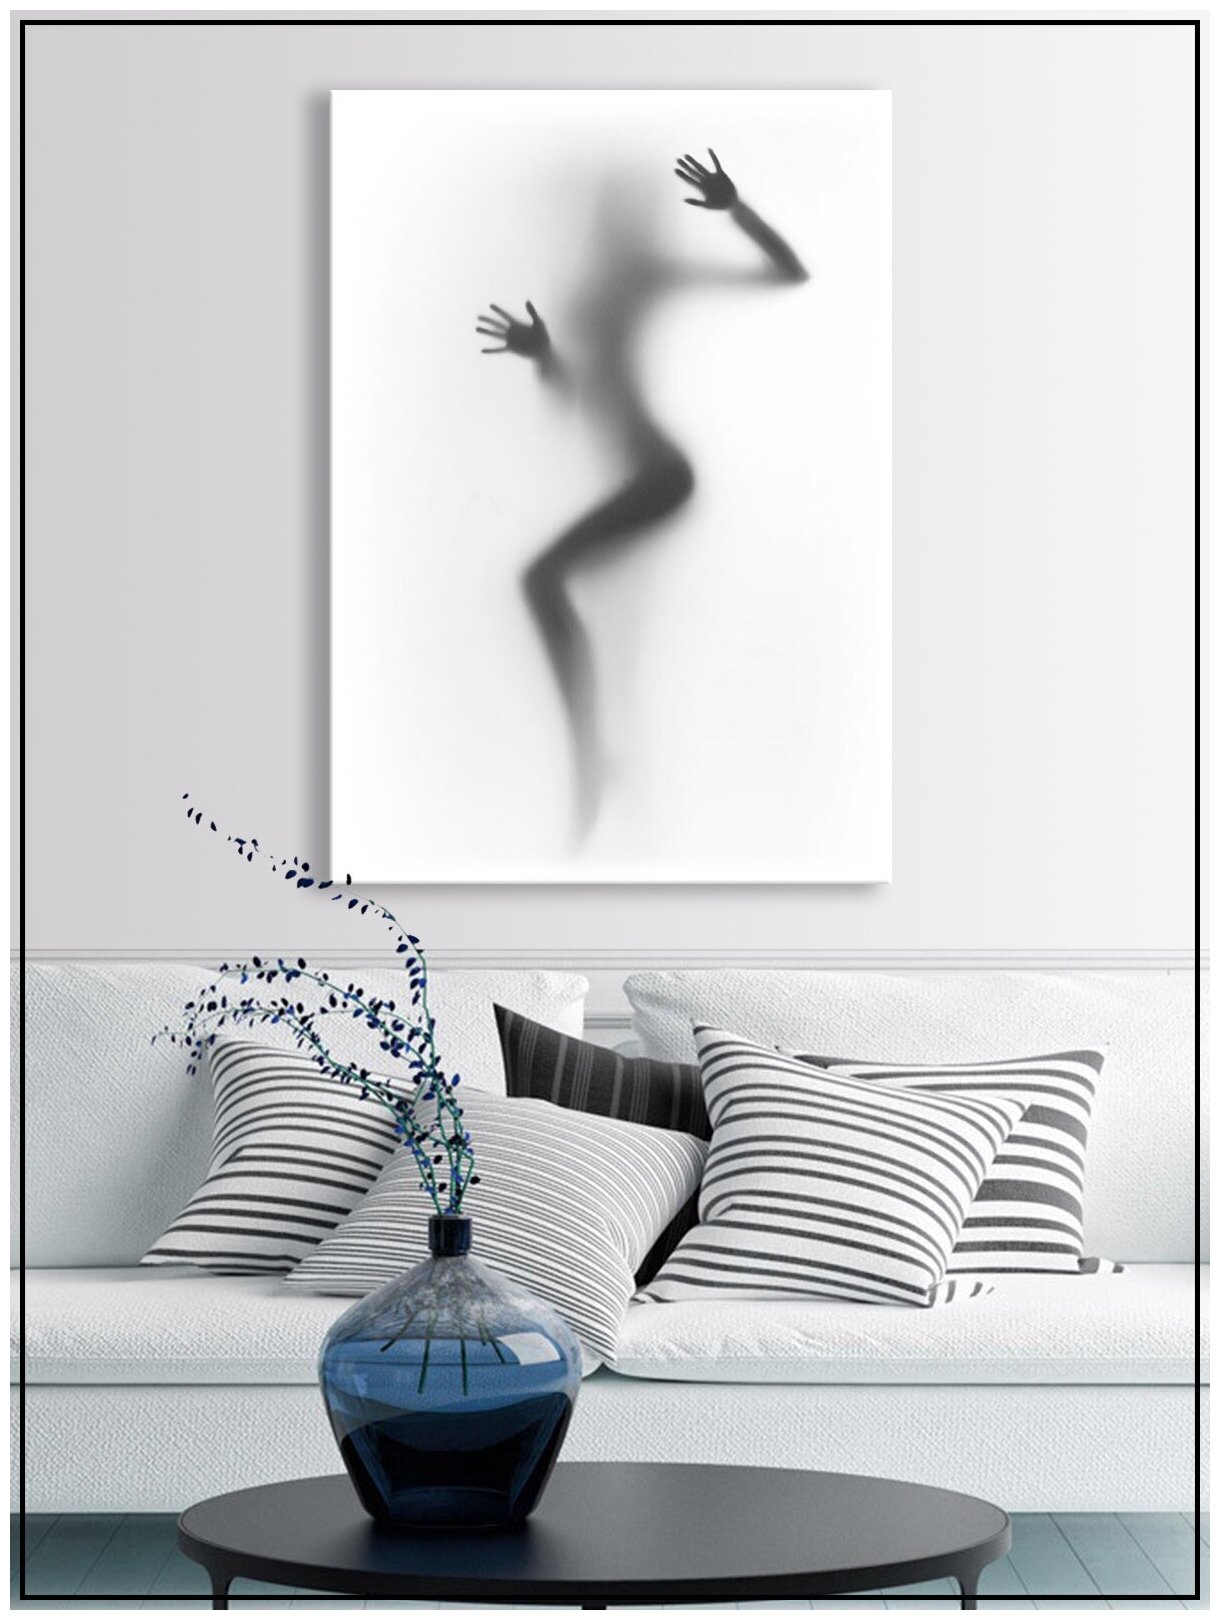 Картина для интерьера на натуральном хлопковом холсте "Силуэт девушки за стеклом", 30*40см, холст на подрамнике, картина в подарок для дома